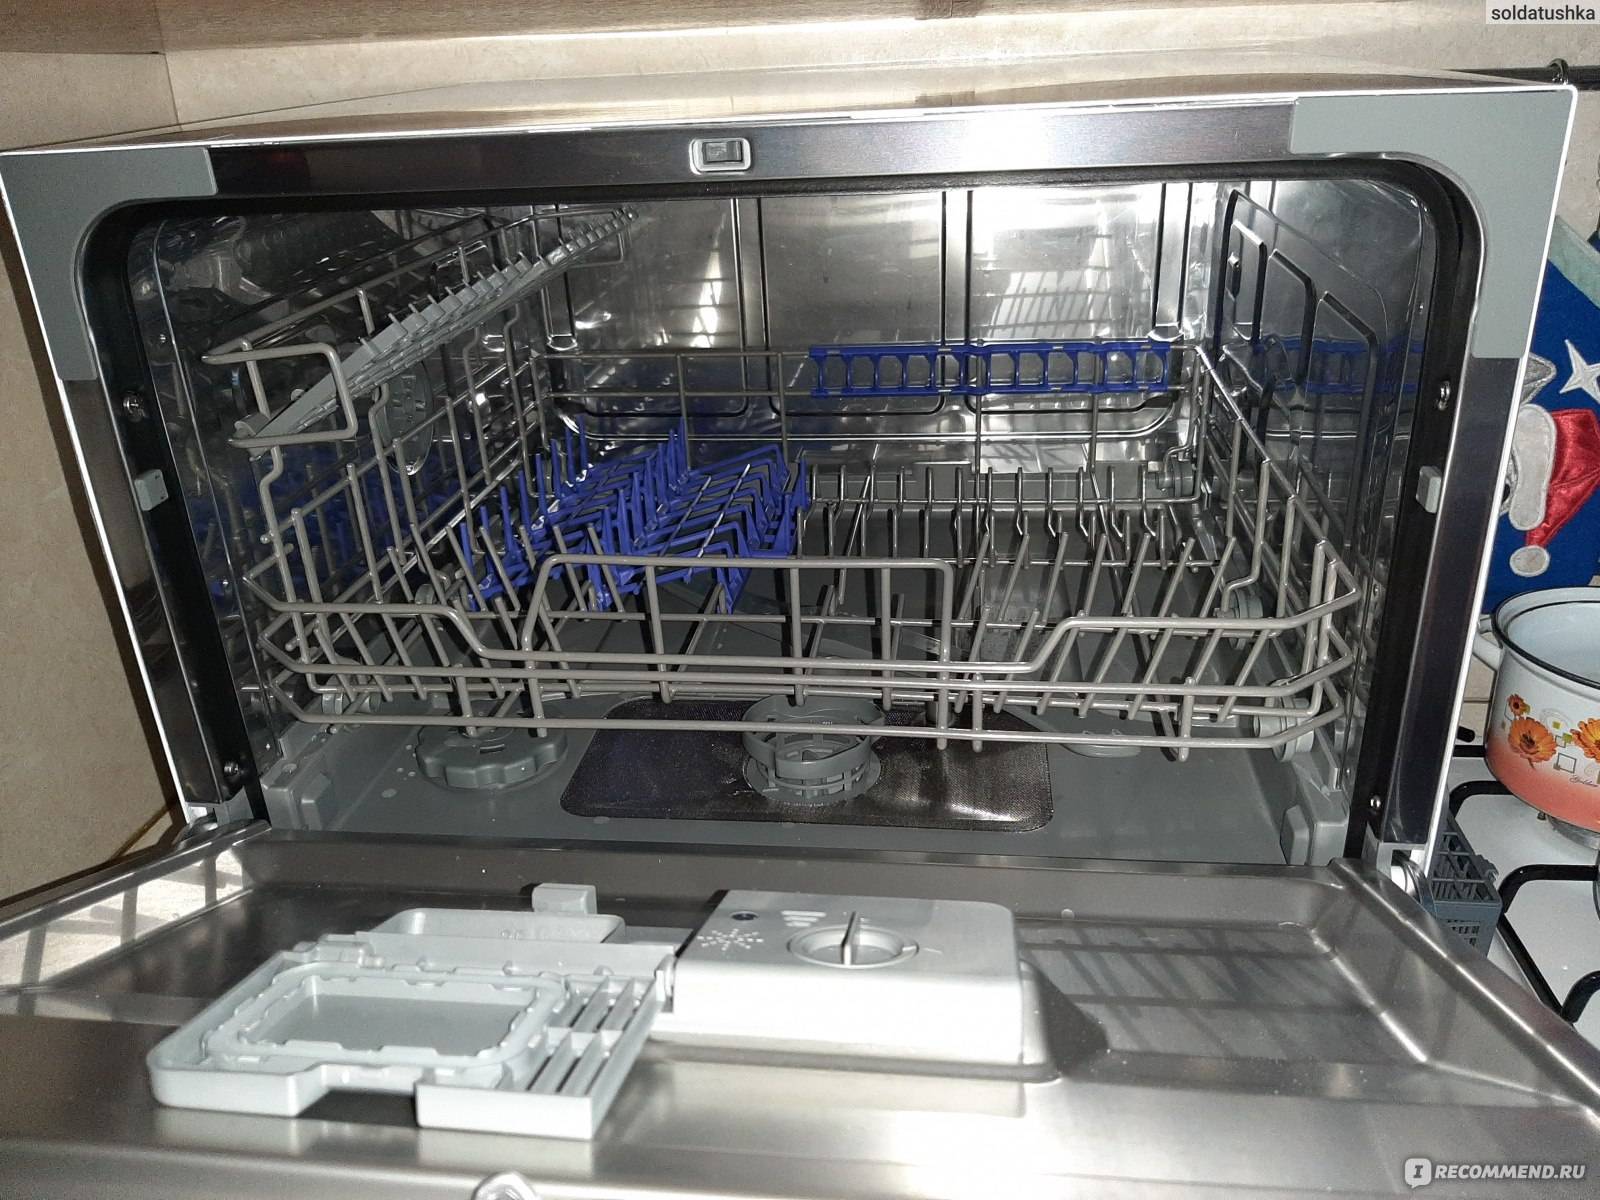 Посудомоечная машина midea отзывы - посудомоечные машины - сайт отзывов обо всём